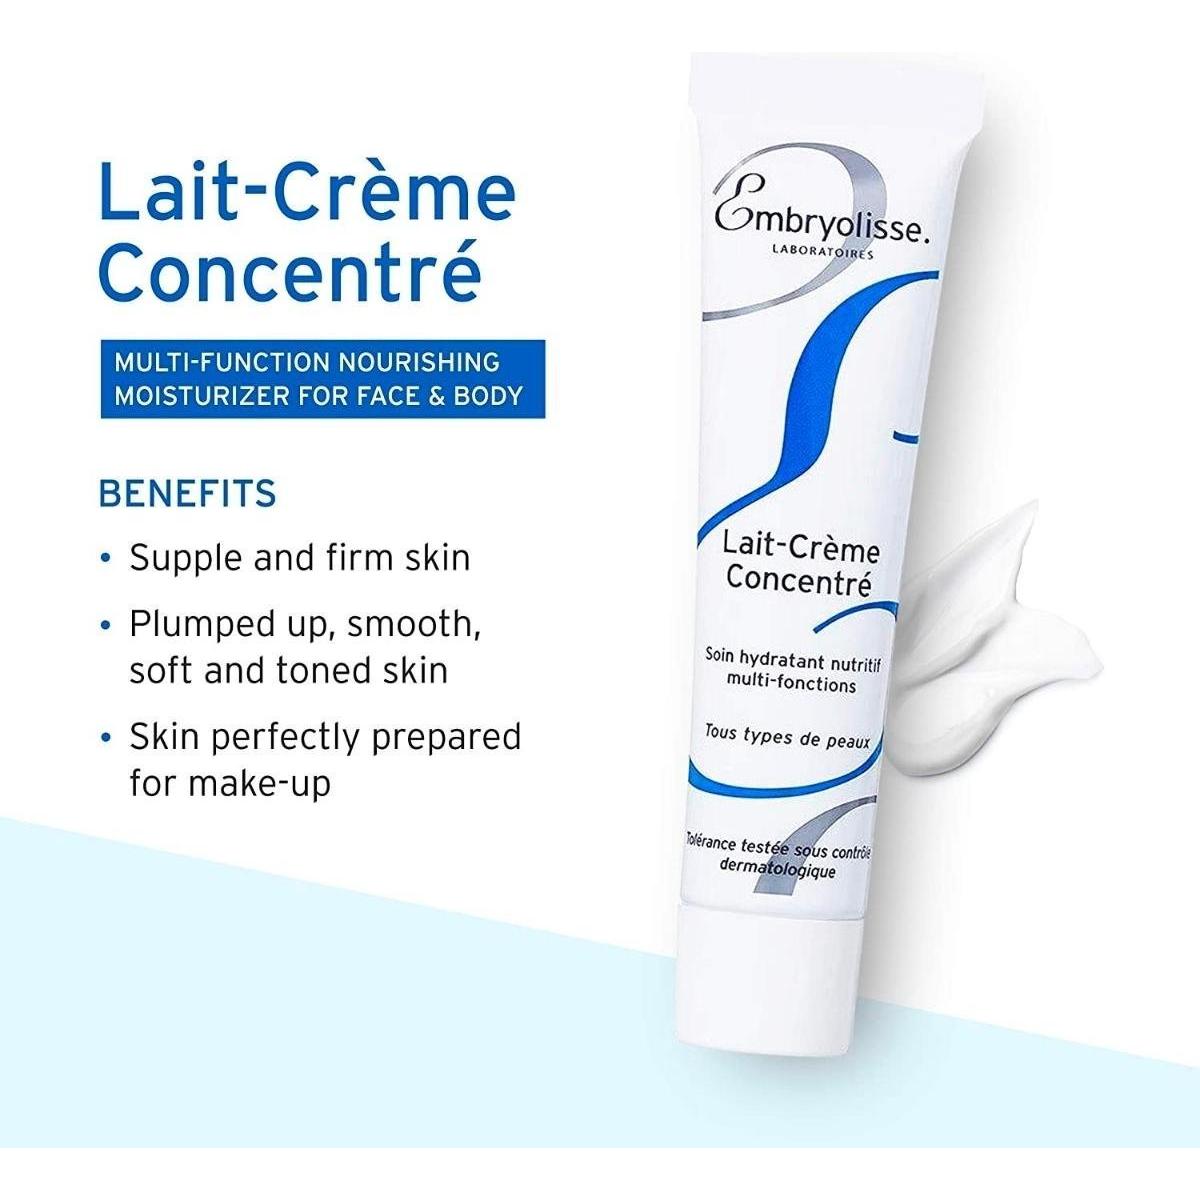 Embryolisse | Lait-Crème Concentré | 75ml - DG International Ventures Limited